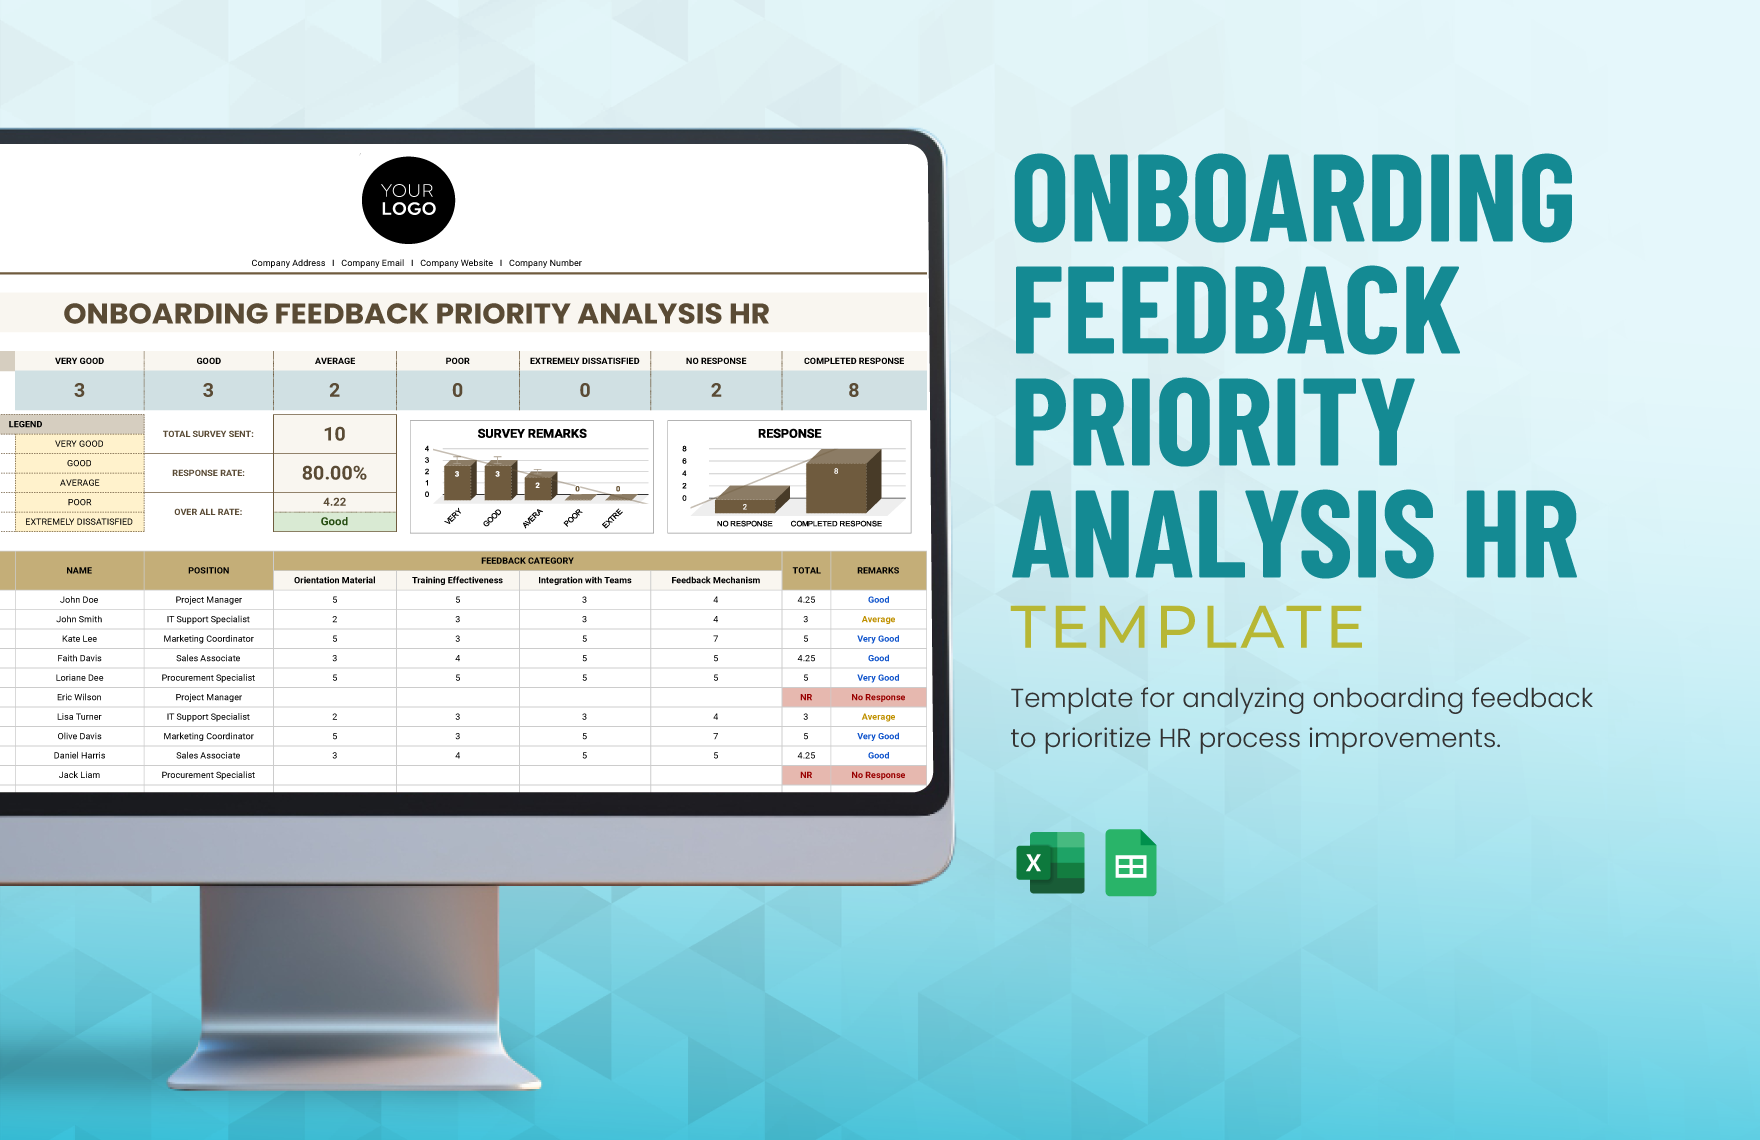 Onboarding Feedback Priority Analysis HR Template